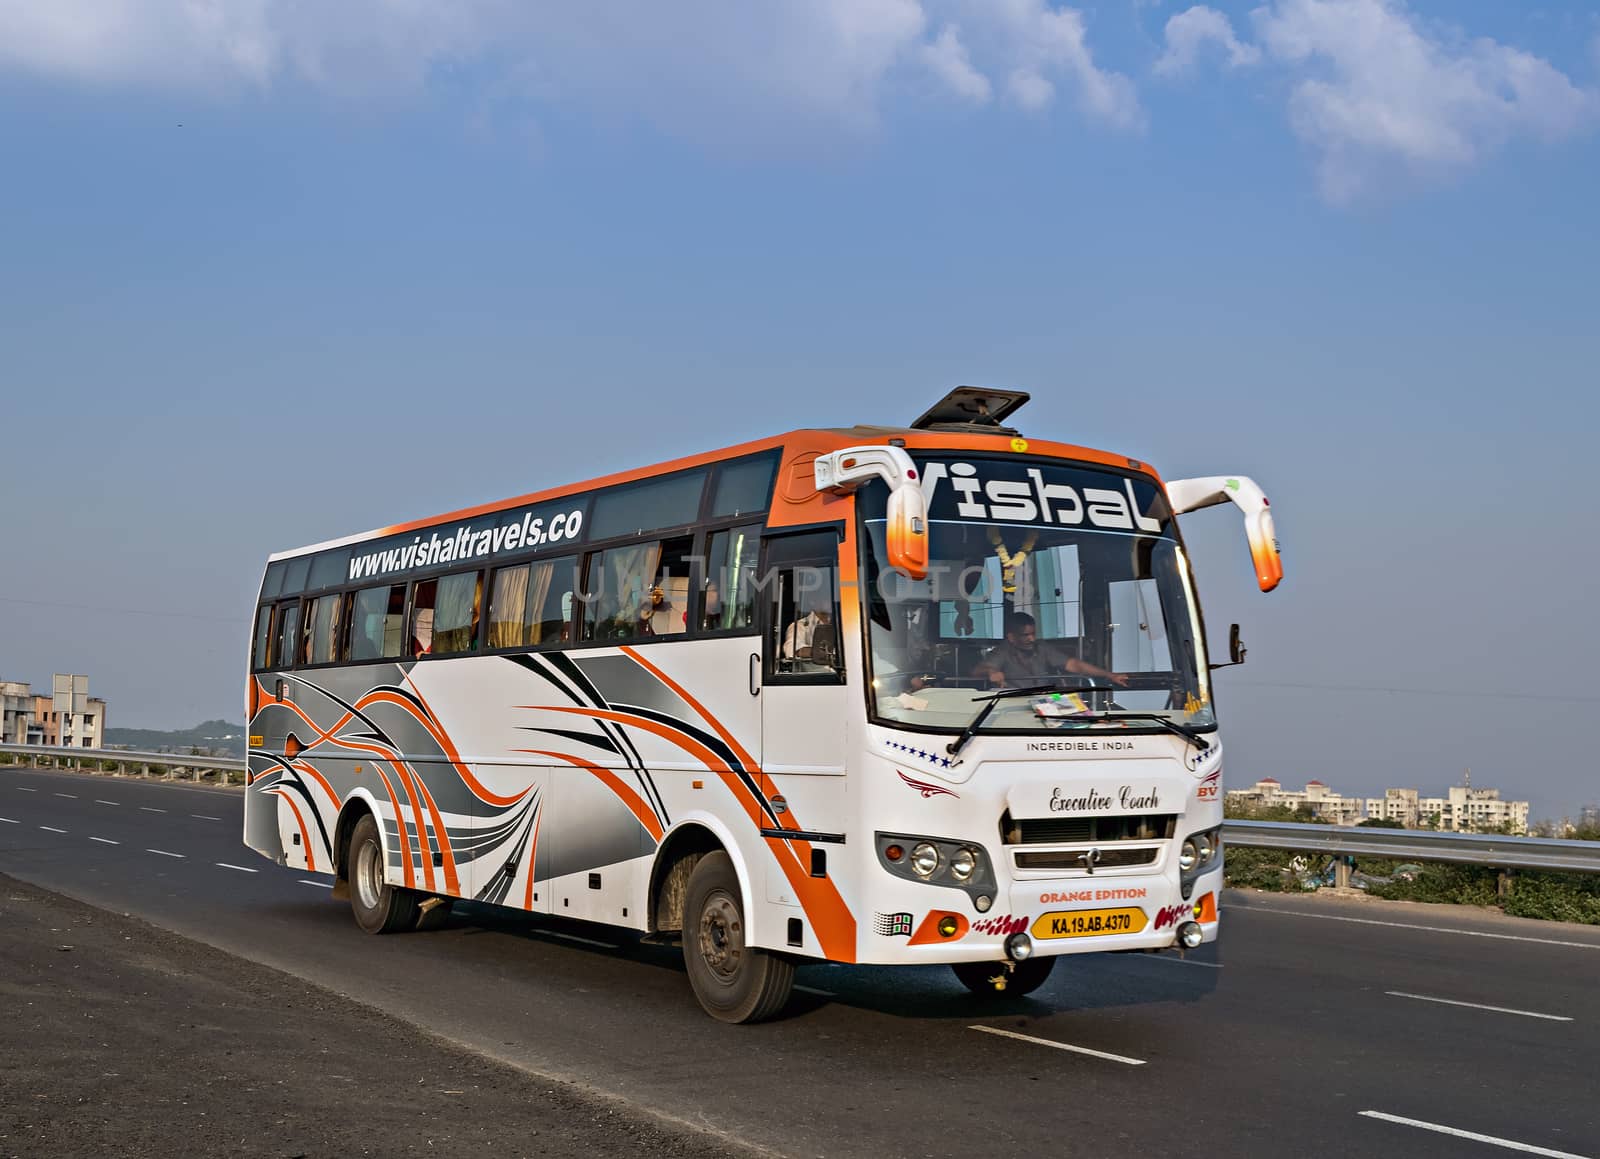 Pune, Maharashtra, India- October 25th, 2016: Vishal travels bus speeding on highway.